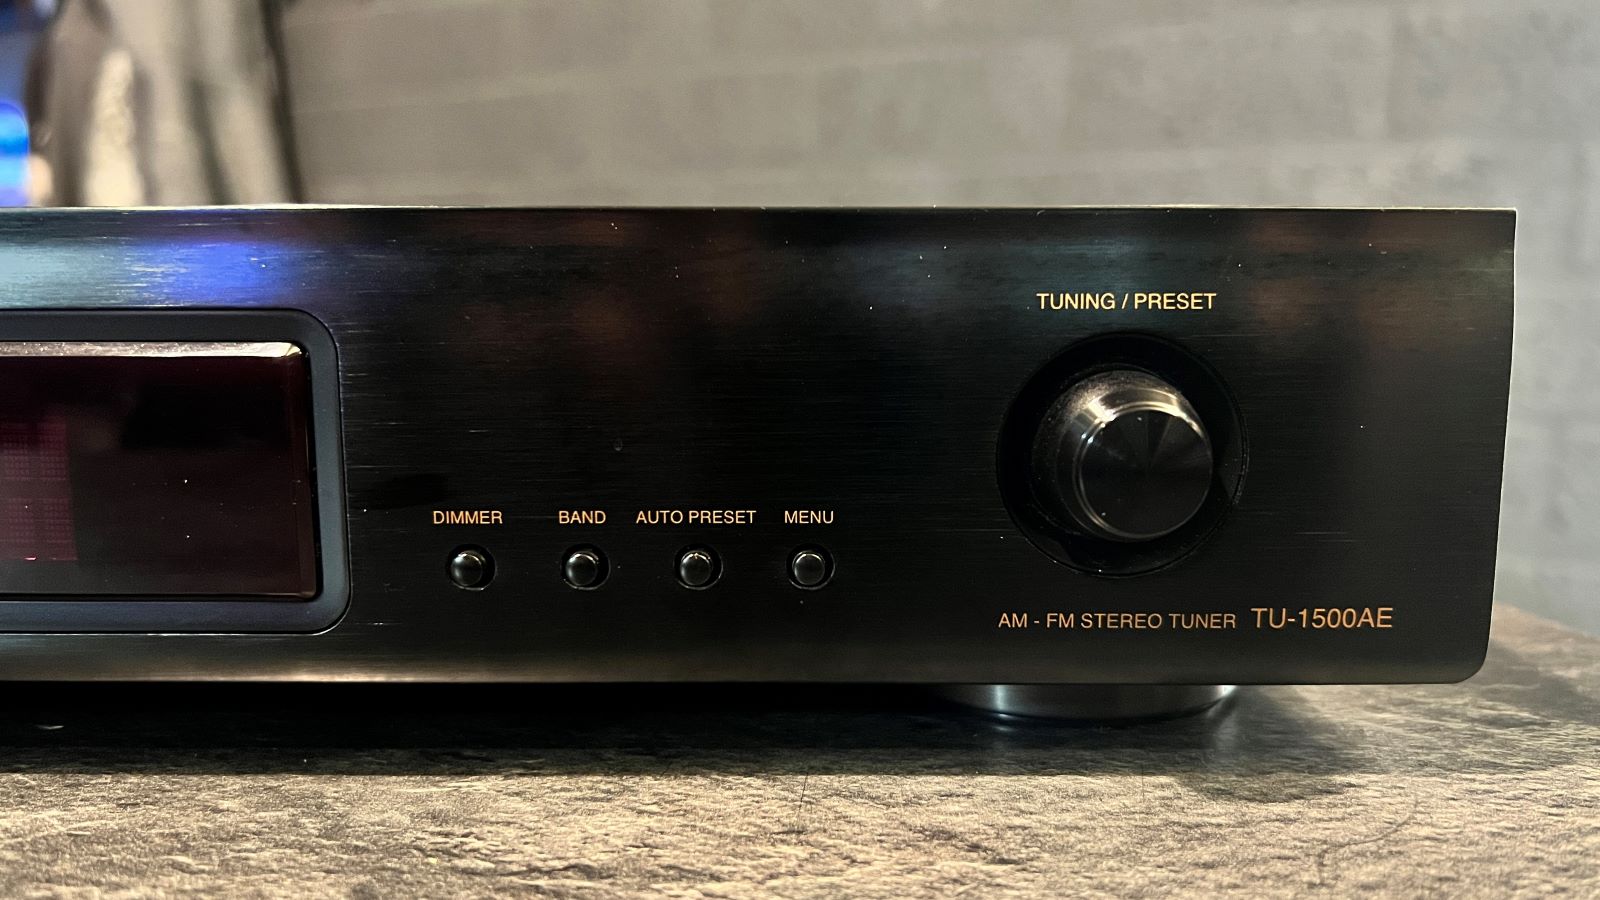 Denon TU-1500AE AM/FM Stereo tuner